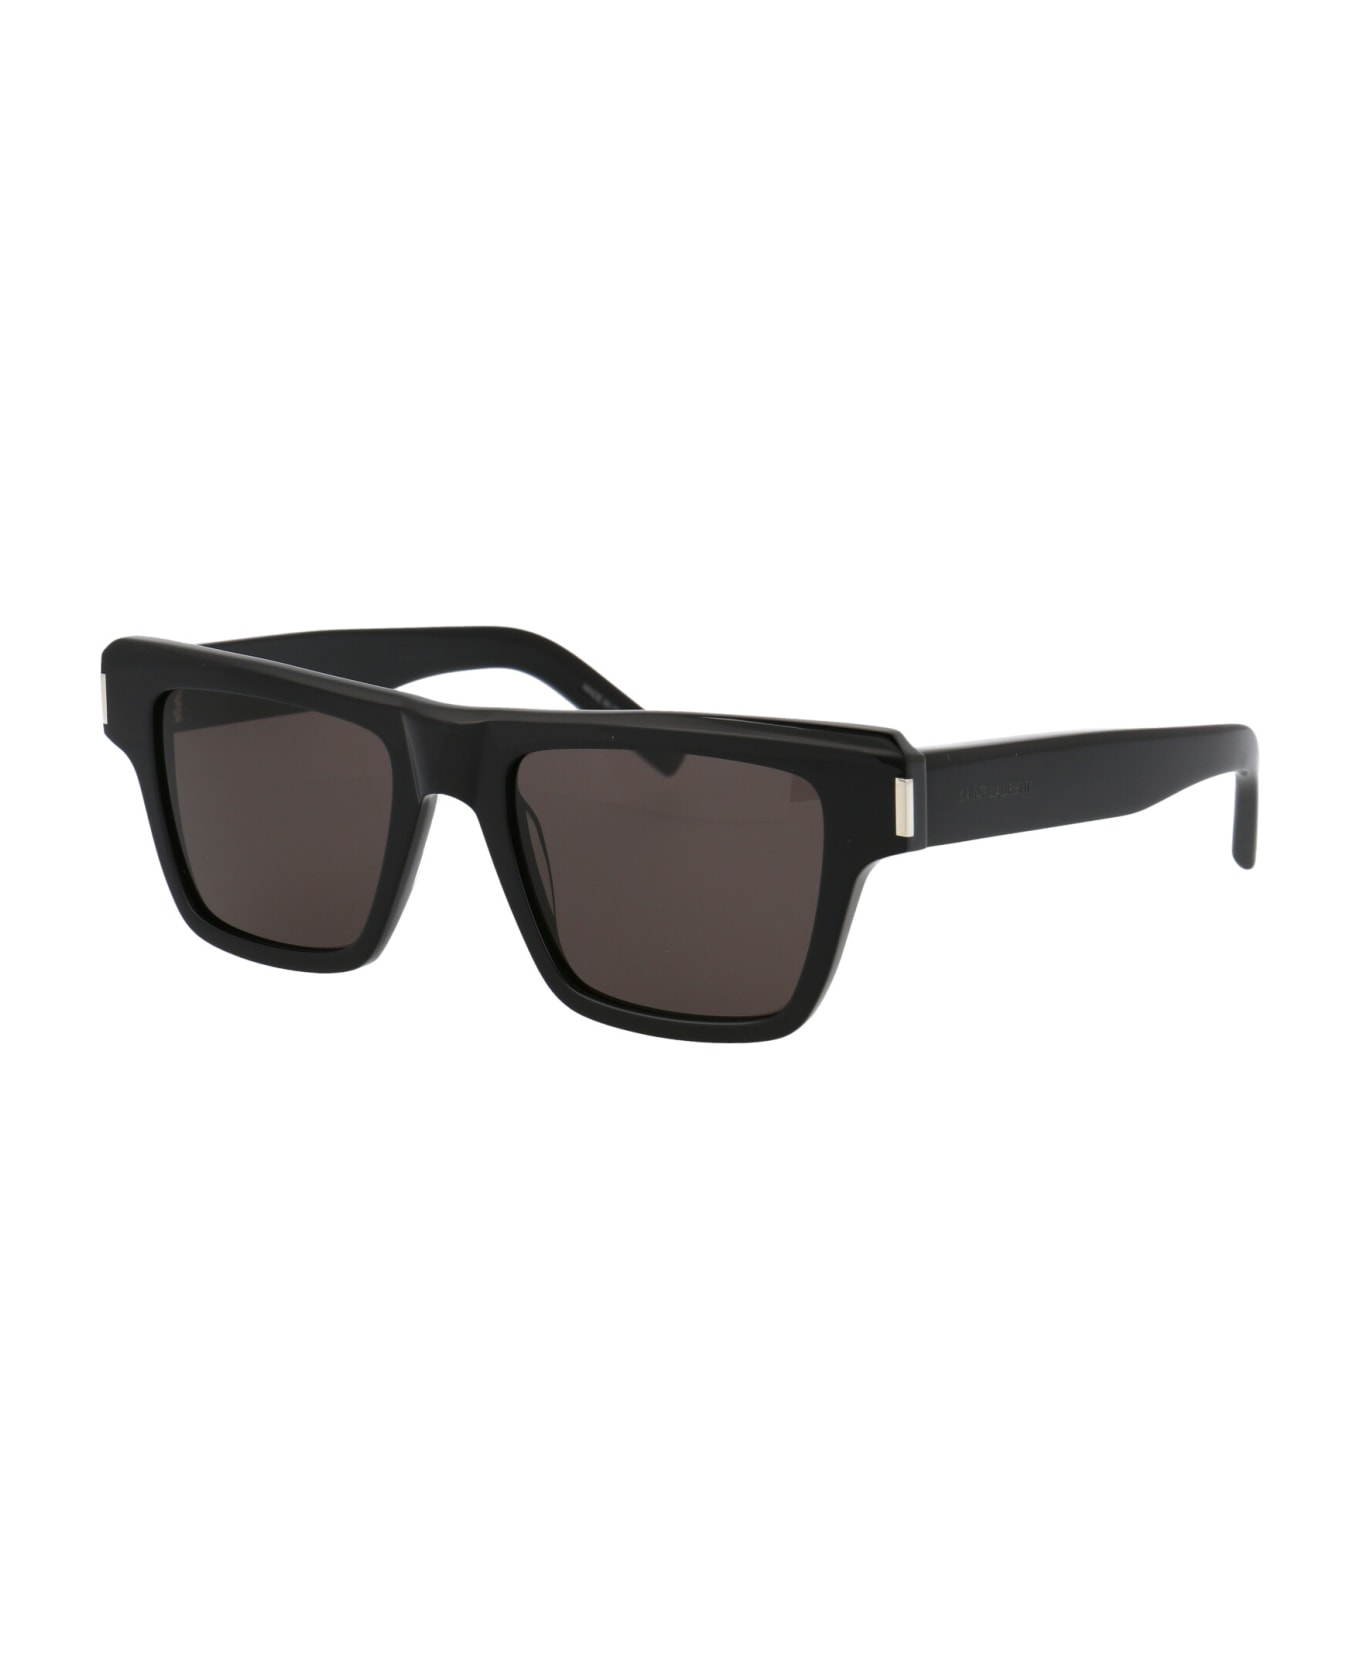 Saint Laurent Eyewear Sl 469 Sunglasses - 001 BLACK BLACK BLACK